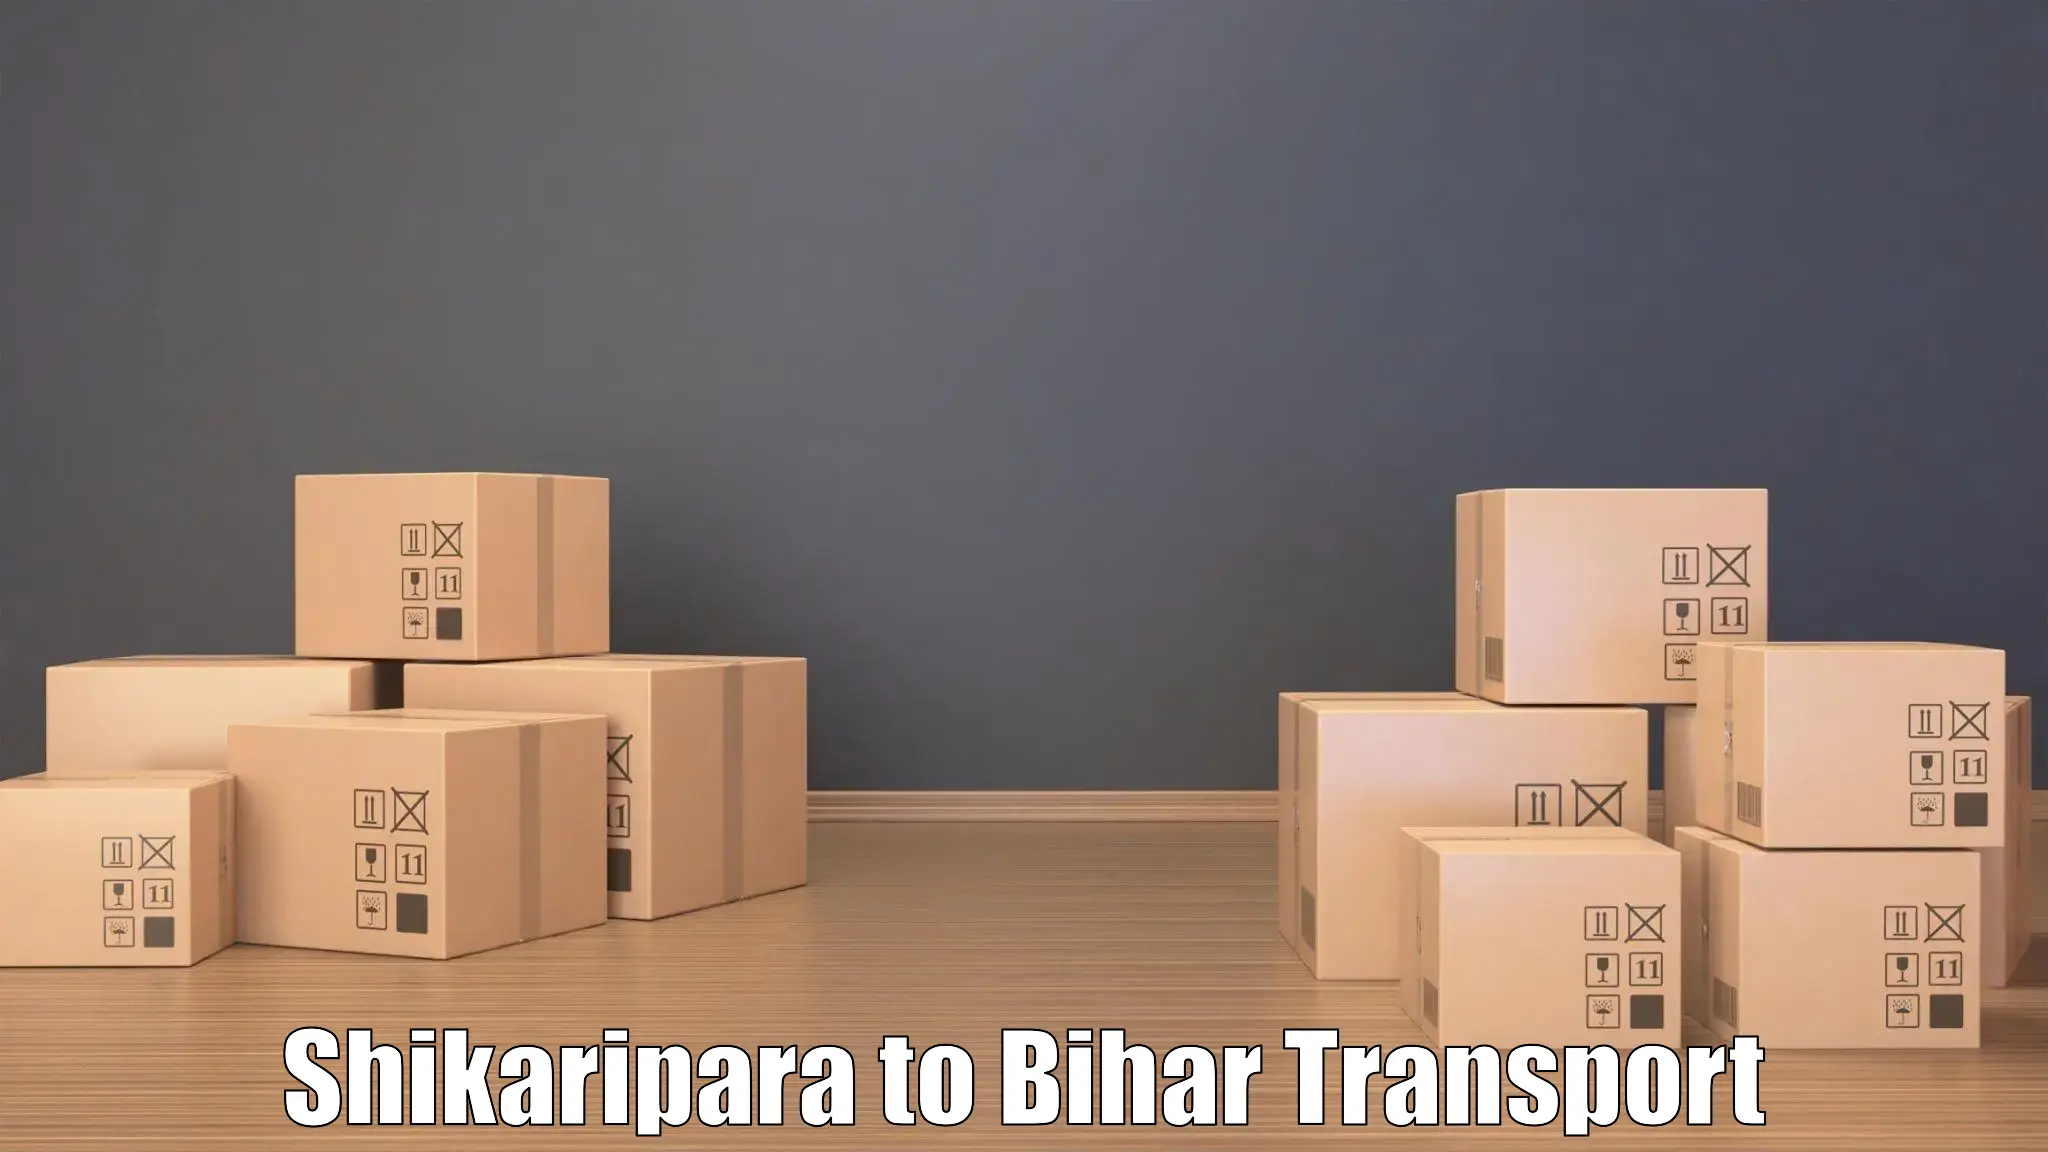 Furniture transport service Shikaripara to Forbesganj